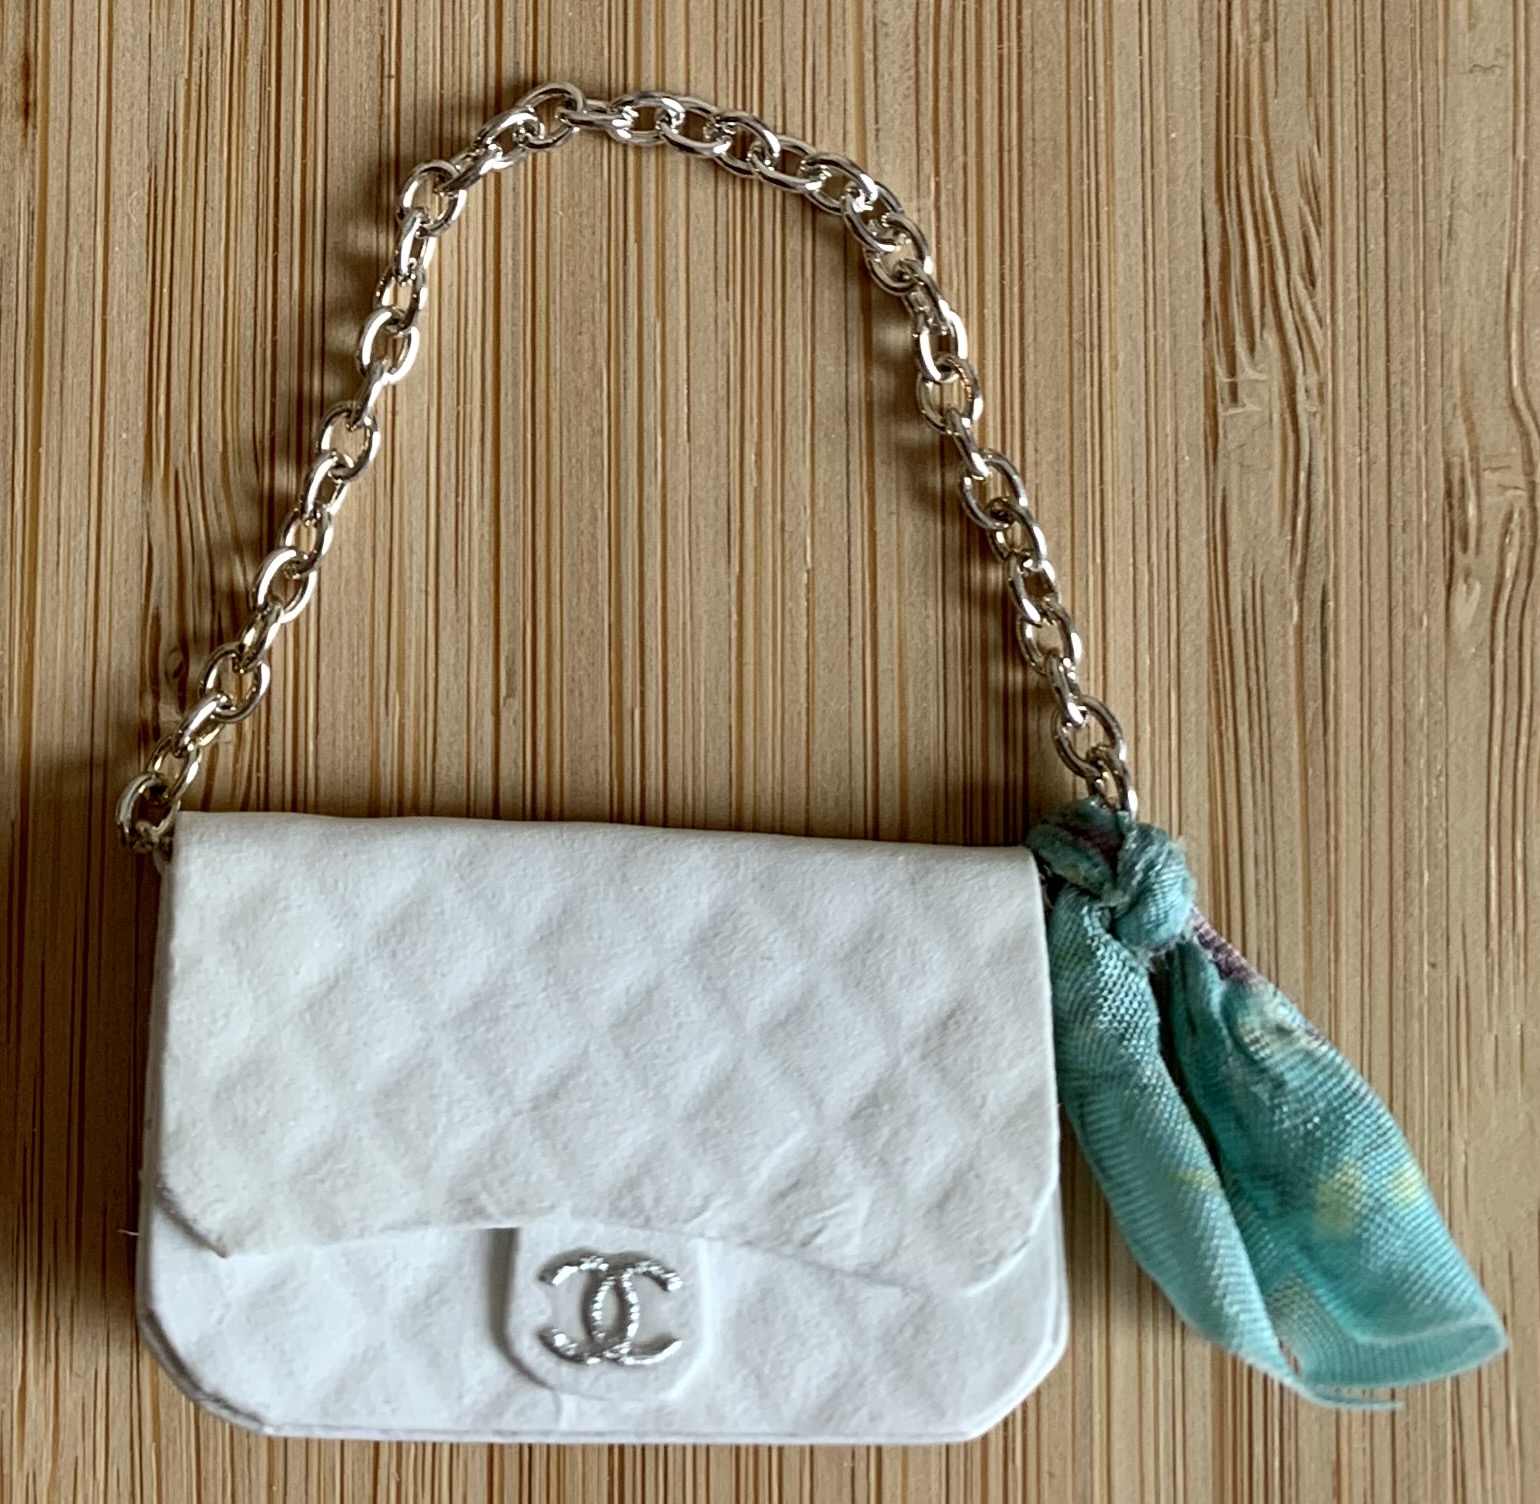 Chanel Handbag and Scarf (Bag: 32 x 20mm)